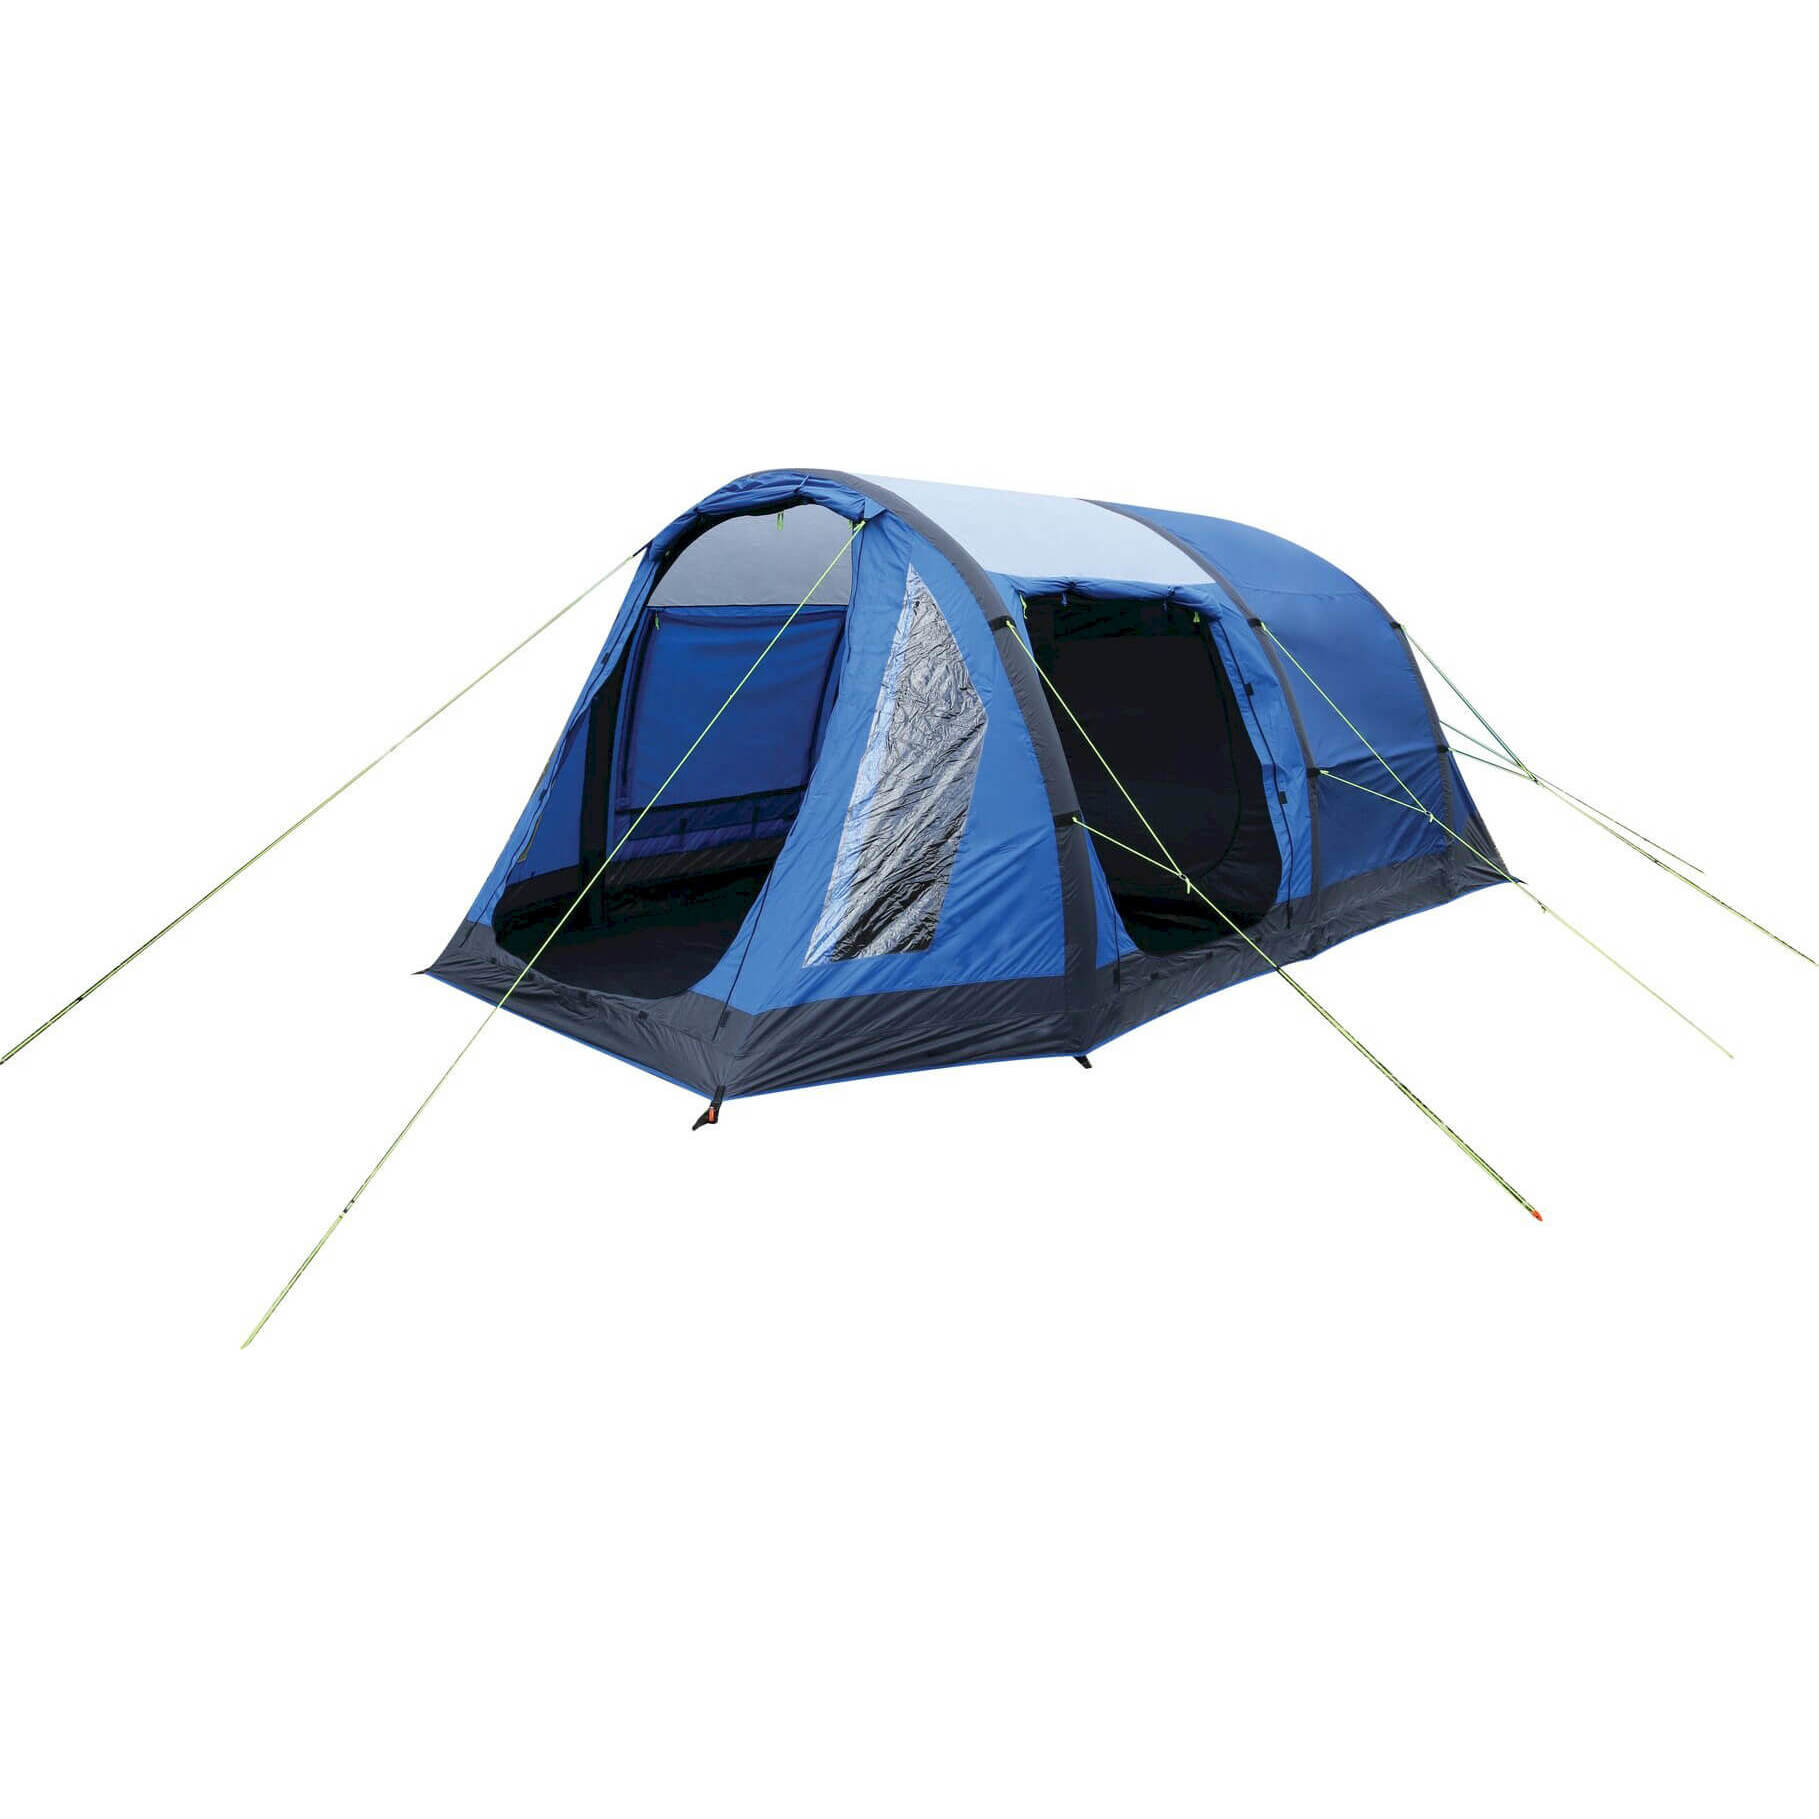 Kolima 5-man inflatable family tent - laser blue ebony grey